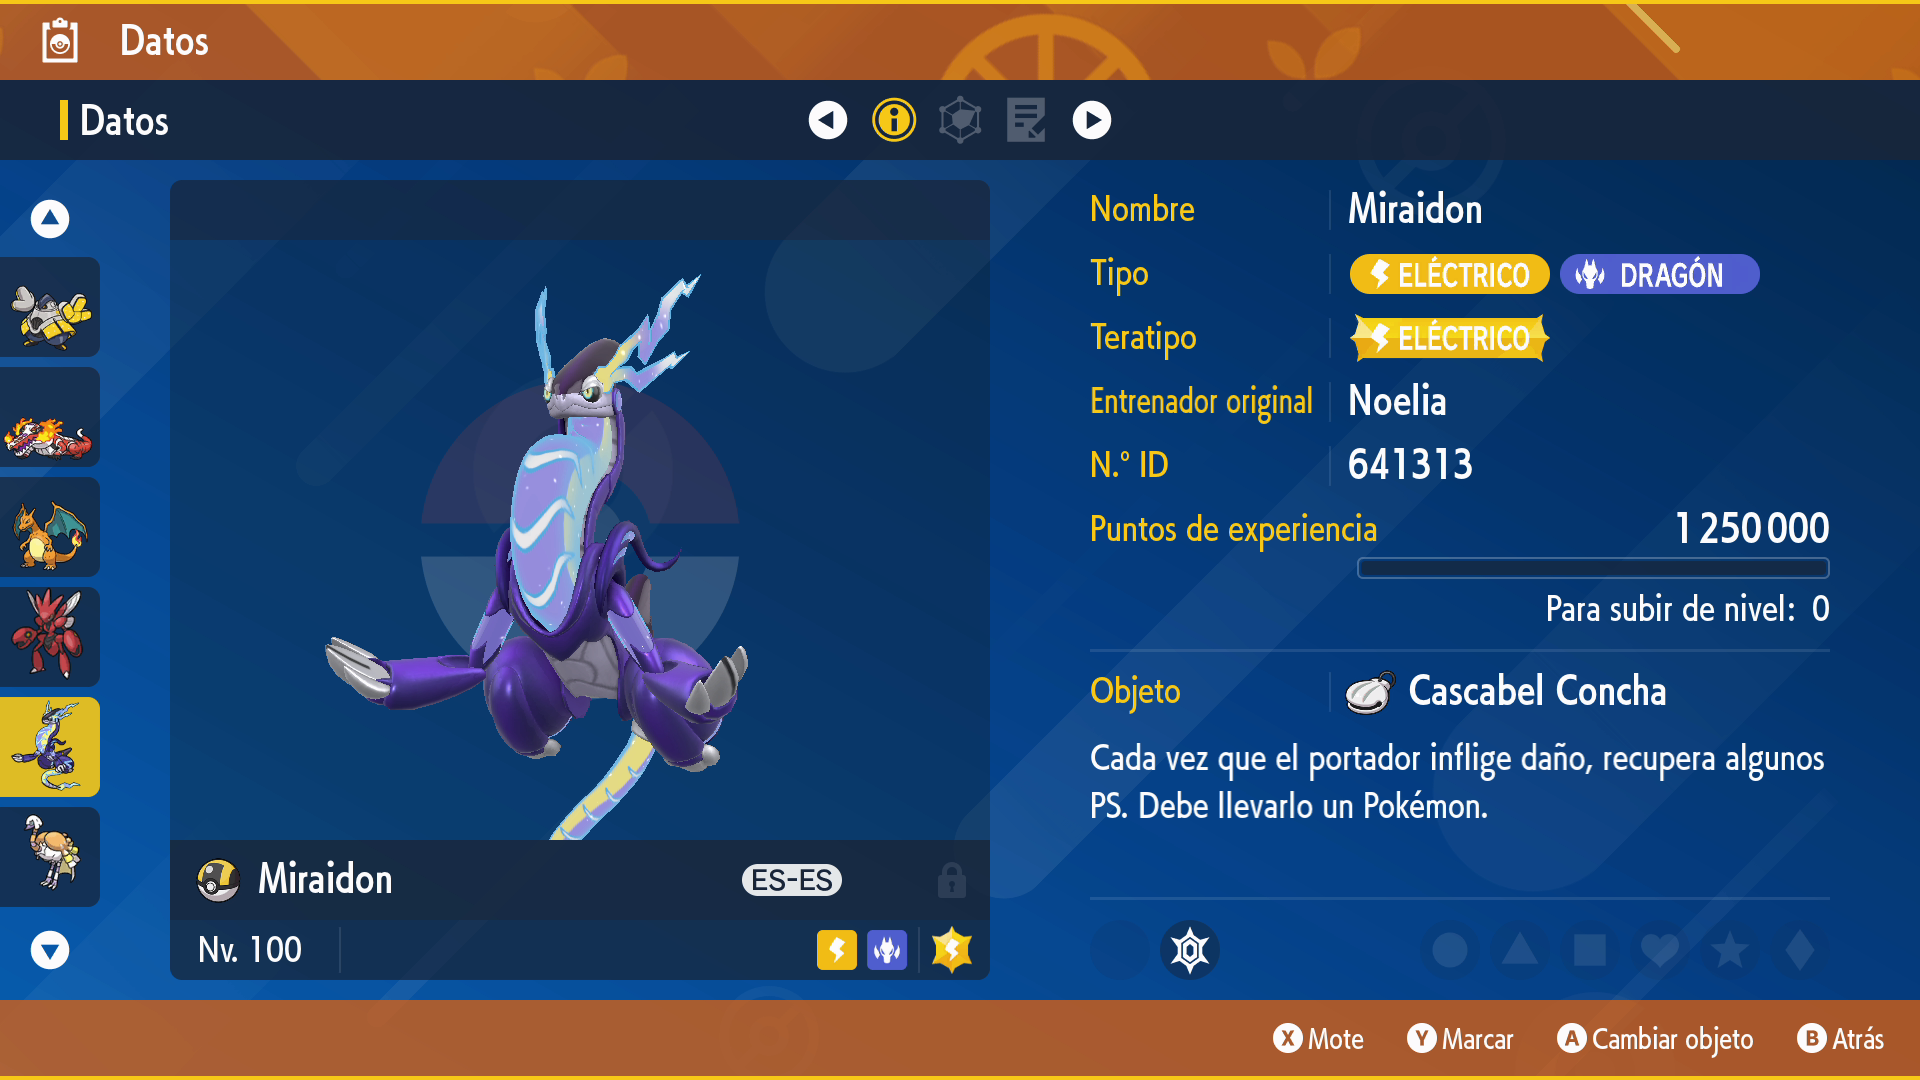 Tabla de tipos completa de Pokémon Escarlata y Púrpura: vulnerabilidades,  fortalezas, inmunidades… - Meristation